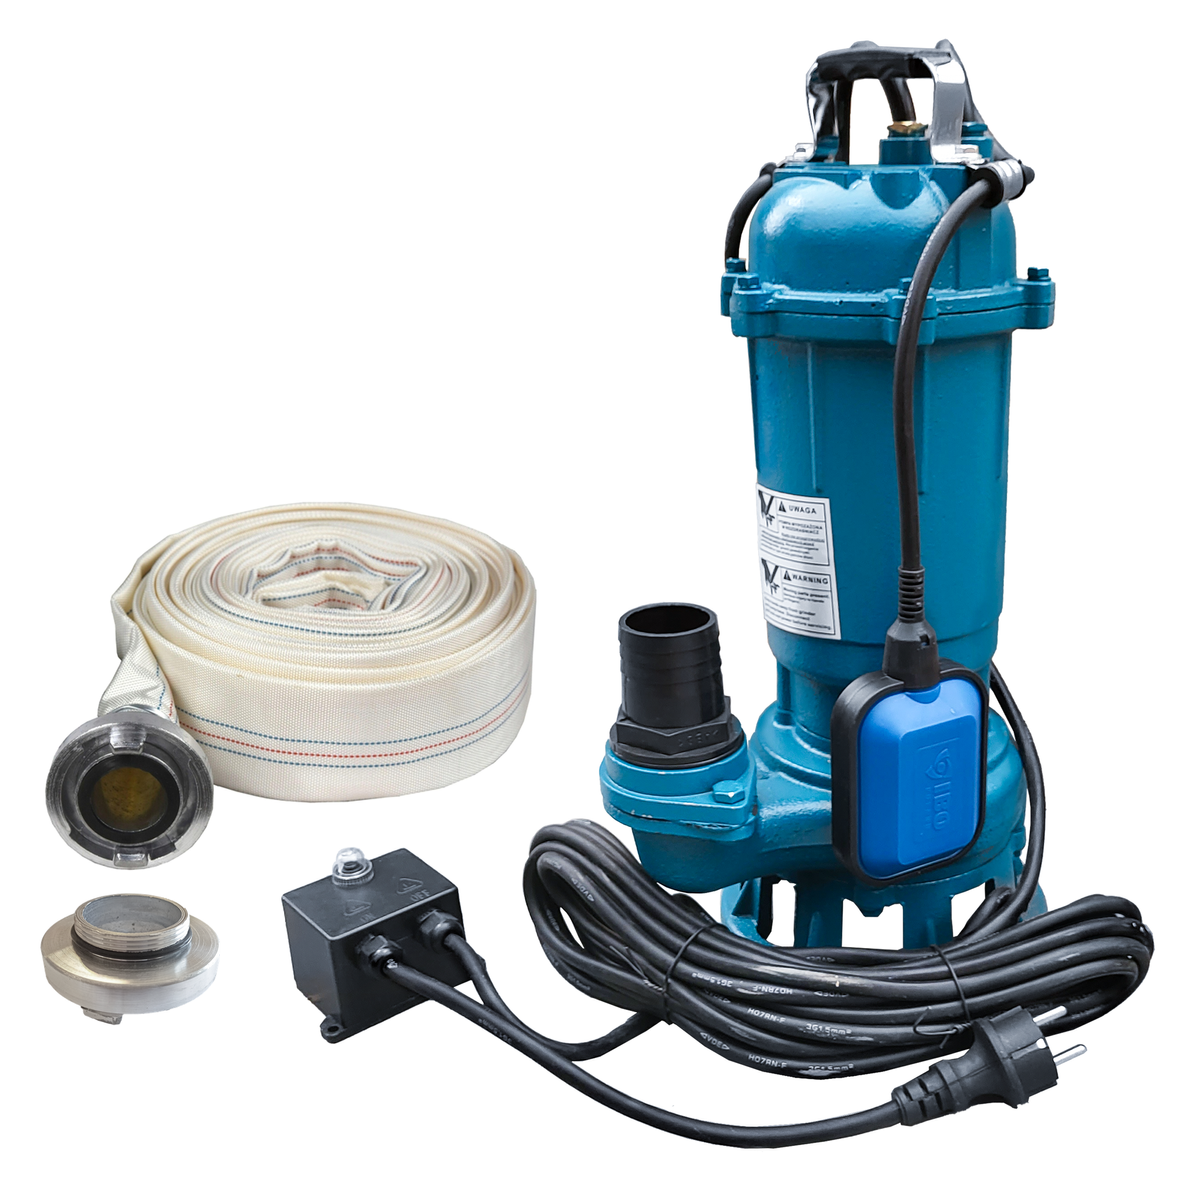 Tauchpumpe Schmutzwasserpumpe 7500l/h Automatik + Handbetrieb Durchlass  30mm, Schmutzwasser- / Tauchpumpen, Pumpen